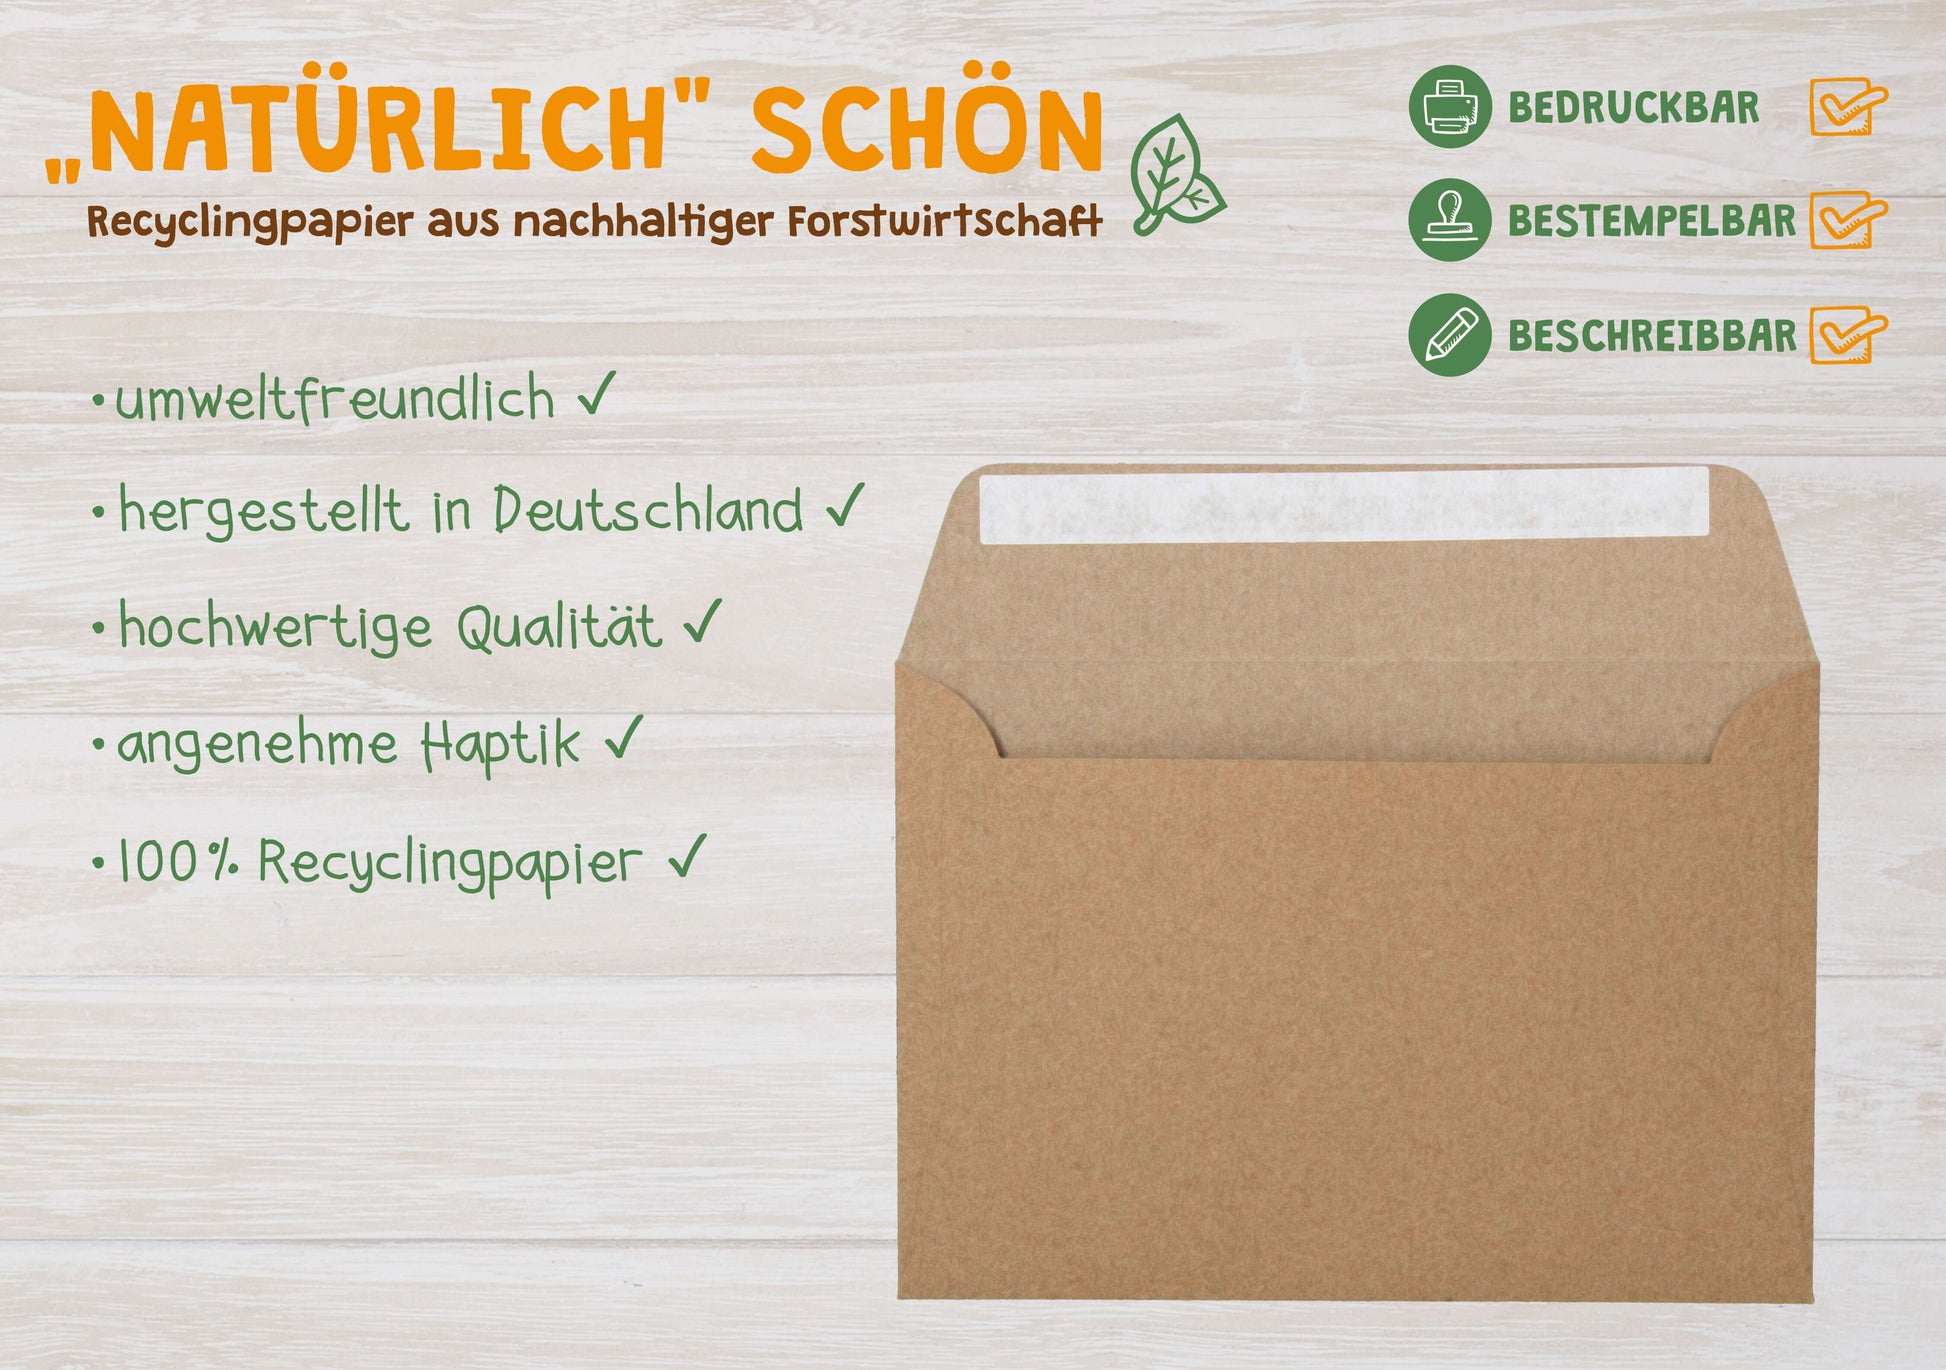 Produkteigenschaften: Hergestellt in Deutschland umweltfreundlich bedruckbar 100% Recycling-Kraftpapier